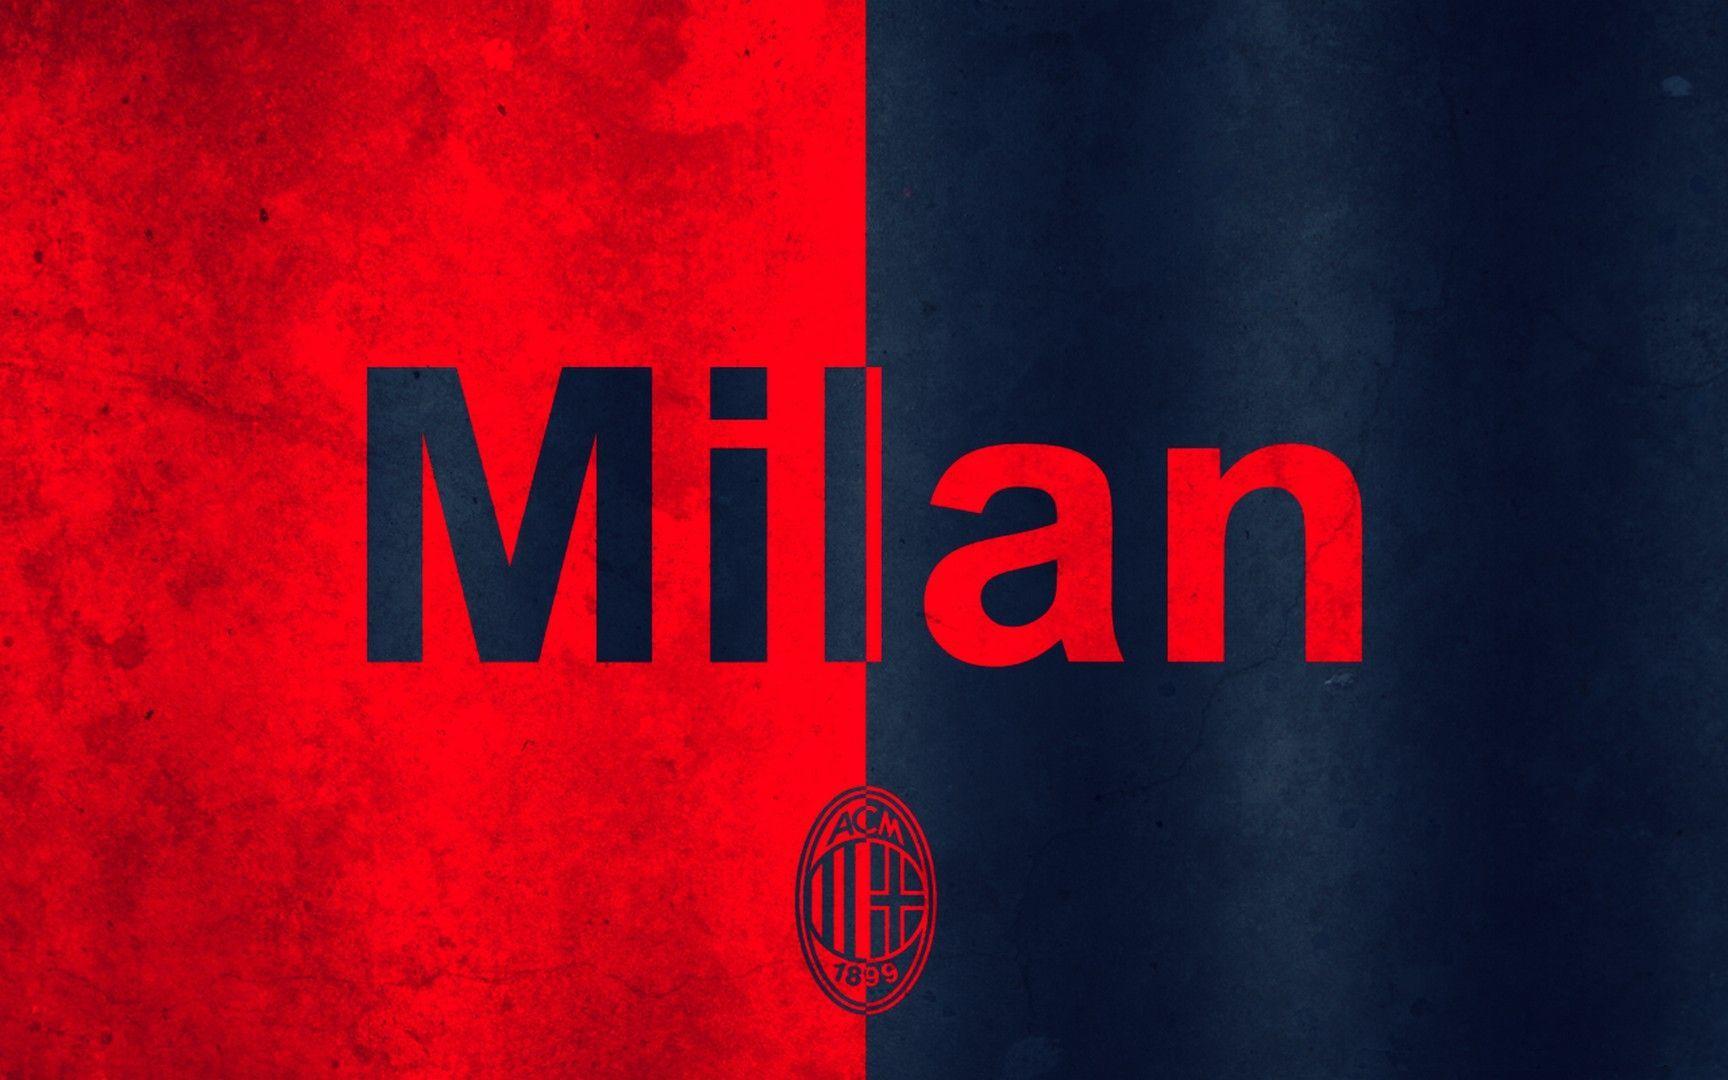 AC Milan Wallpaper. Wallpaper. Milan wallpaper, Ac milan, Milan